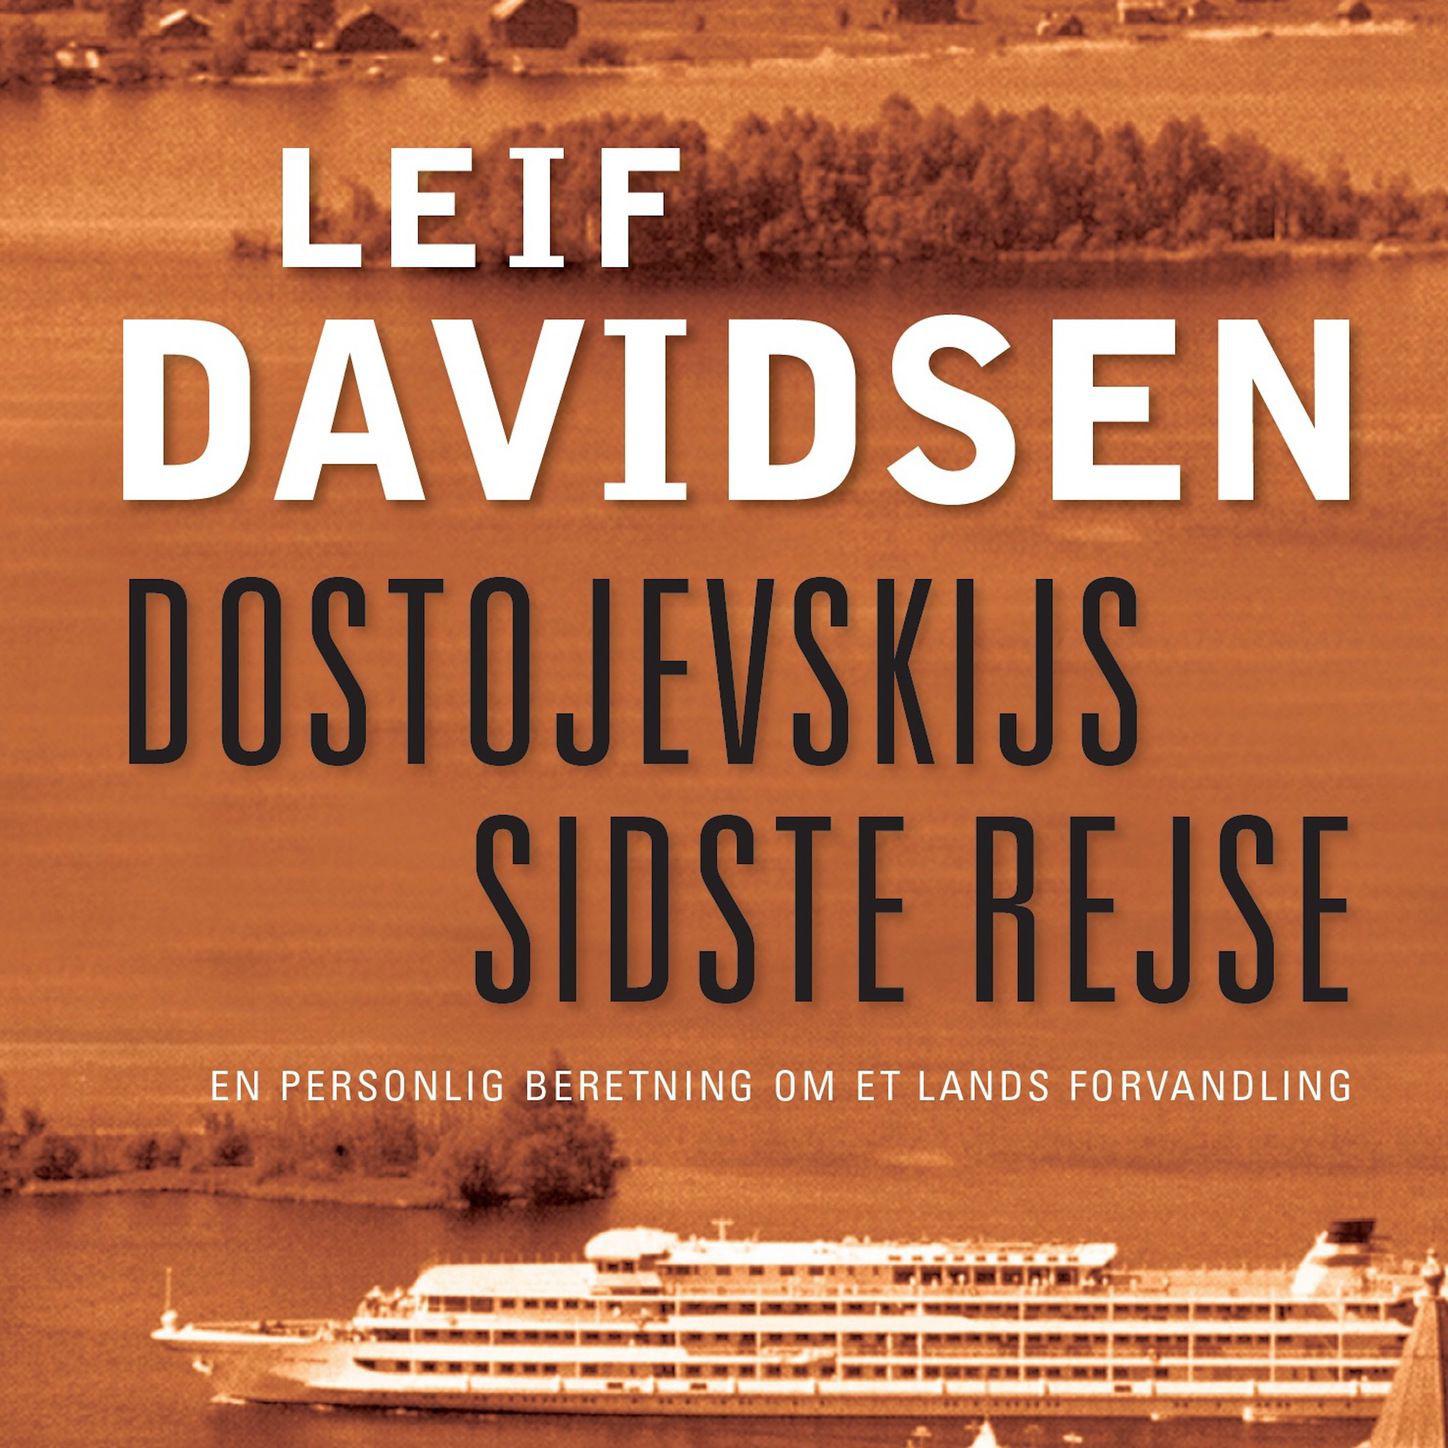 Dostojevskijs sidste rejse - En personlig beretning om et lands forvandling, del130